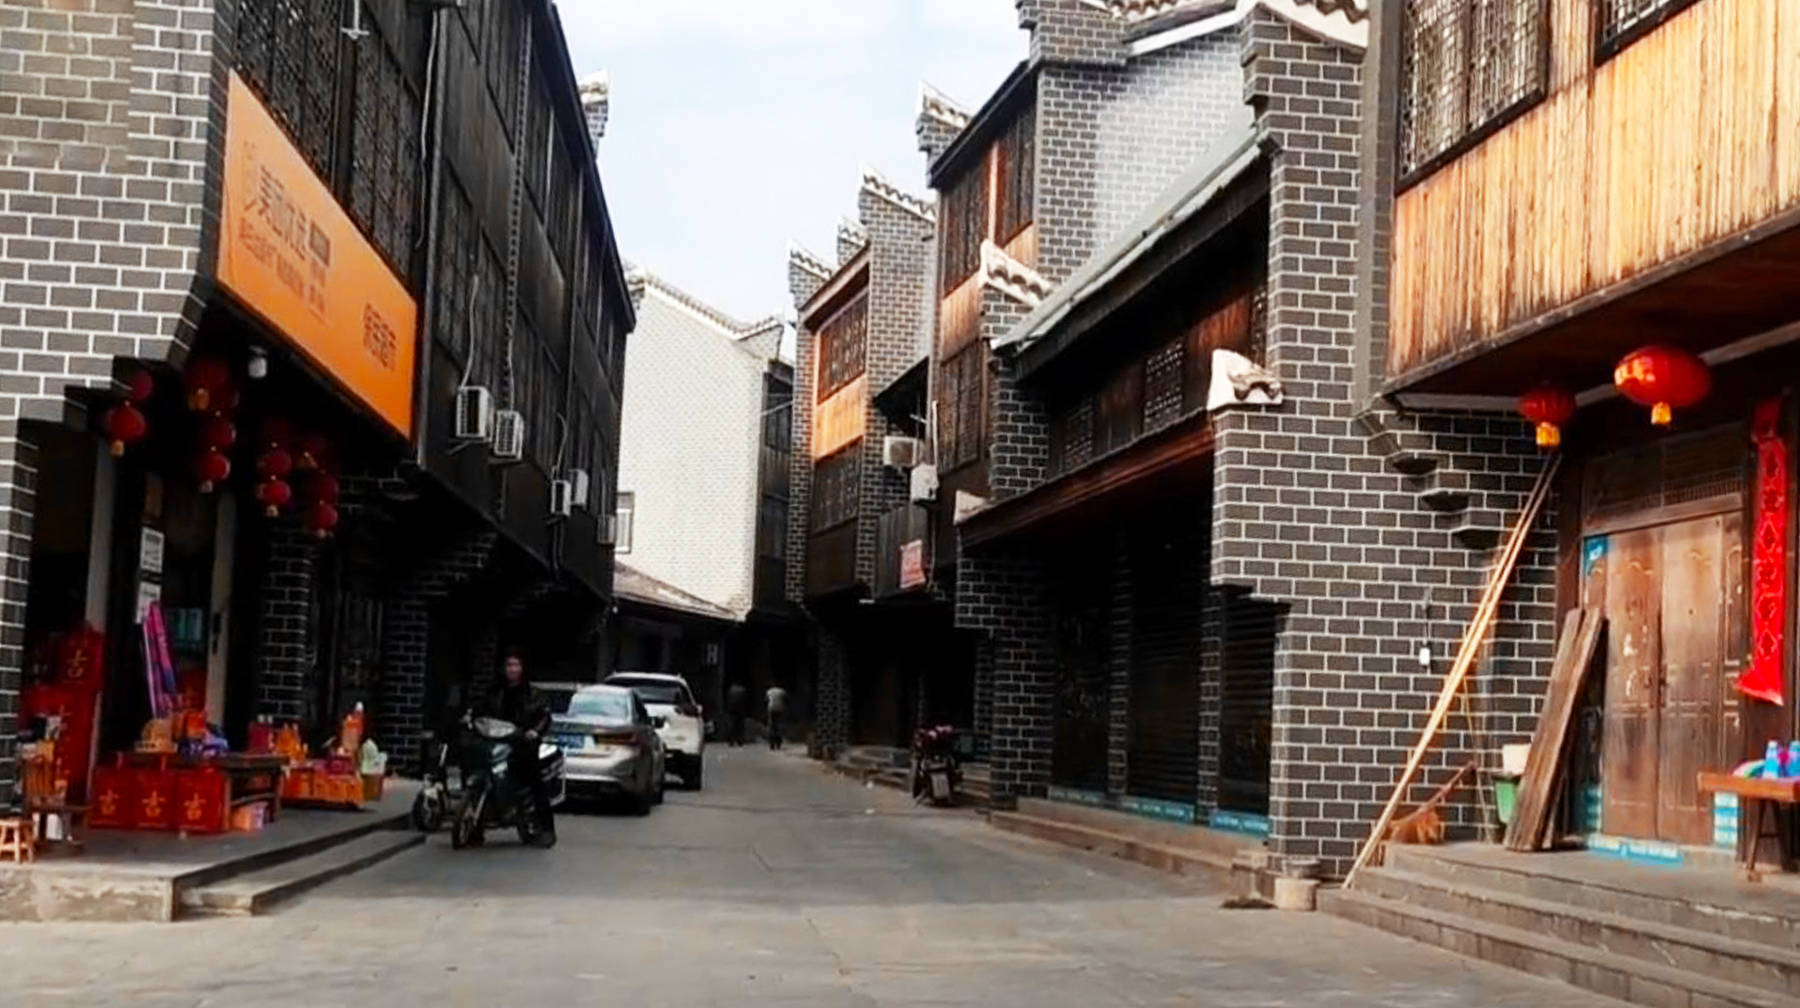 武汉郊区有座美丽小村,遍布古典风格民房,一条老巷子充满年代感